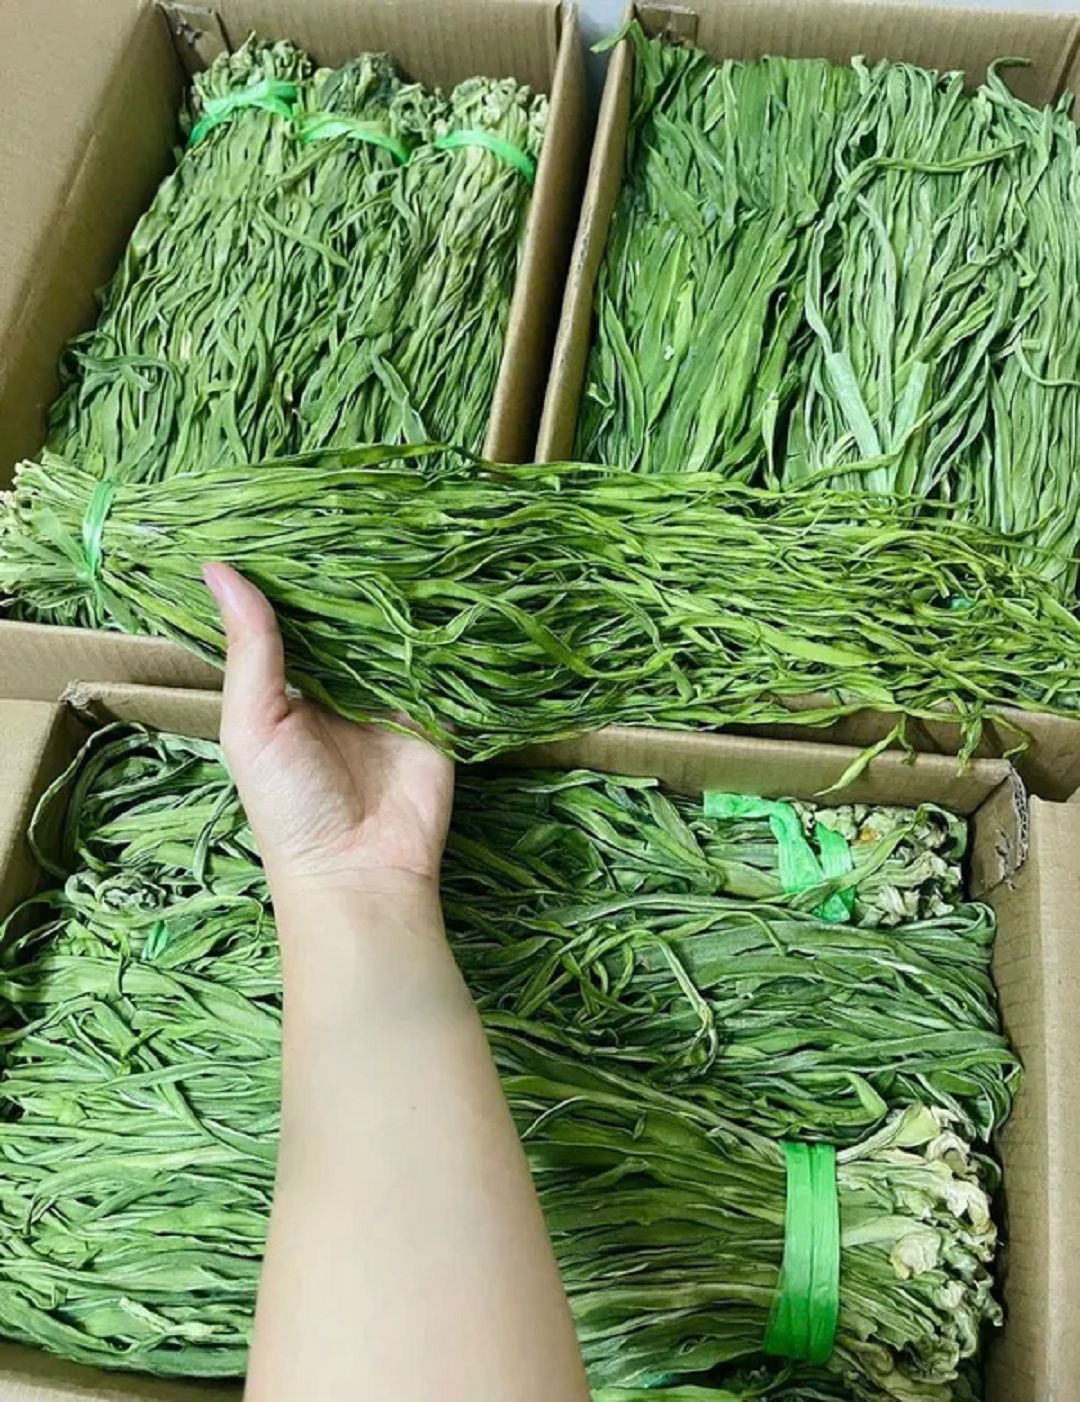 Loại rau trông như "nắm cỏ", xưa rẻ bèo nay giá tận 500 nghìn đồng/kg- Ảnh 1.